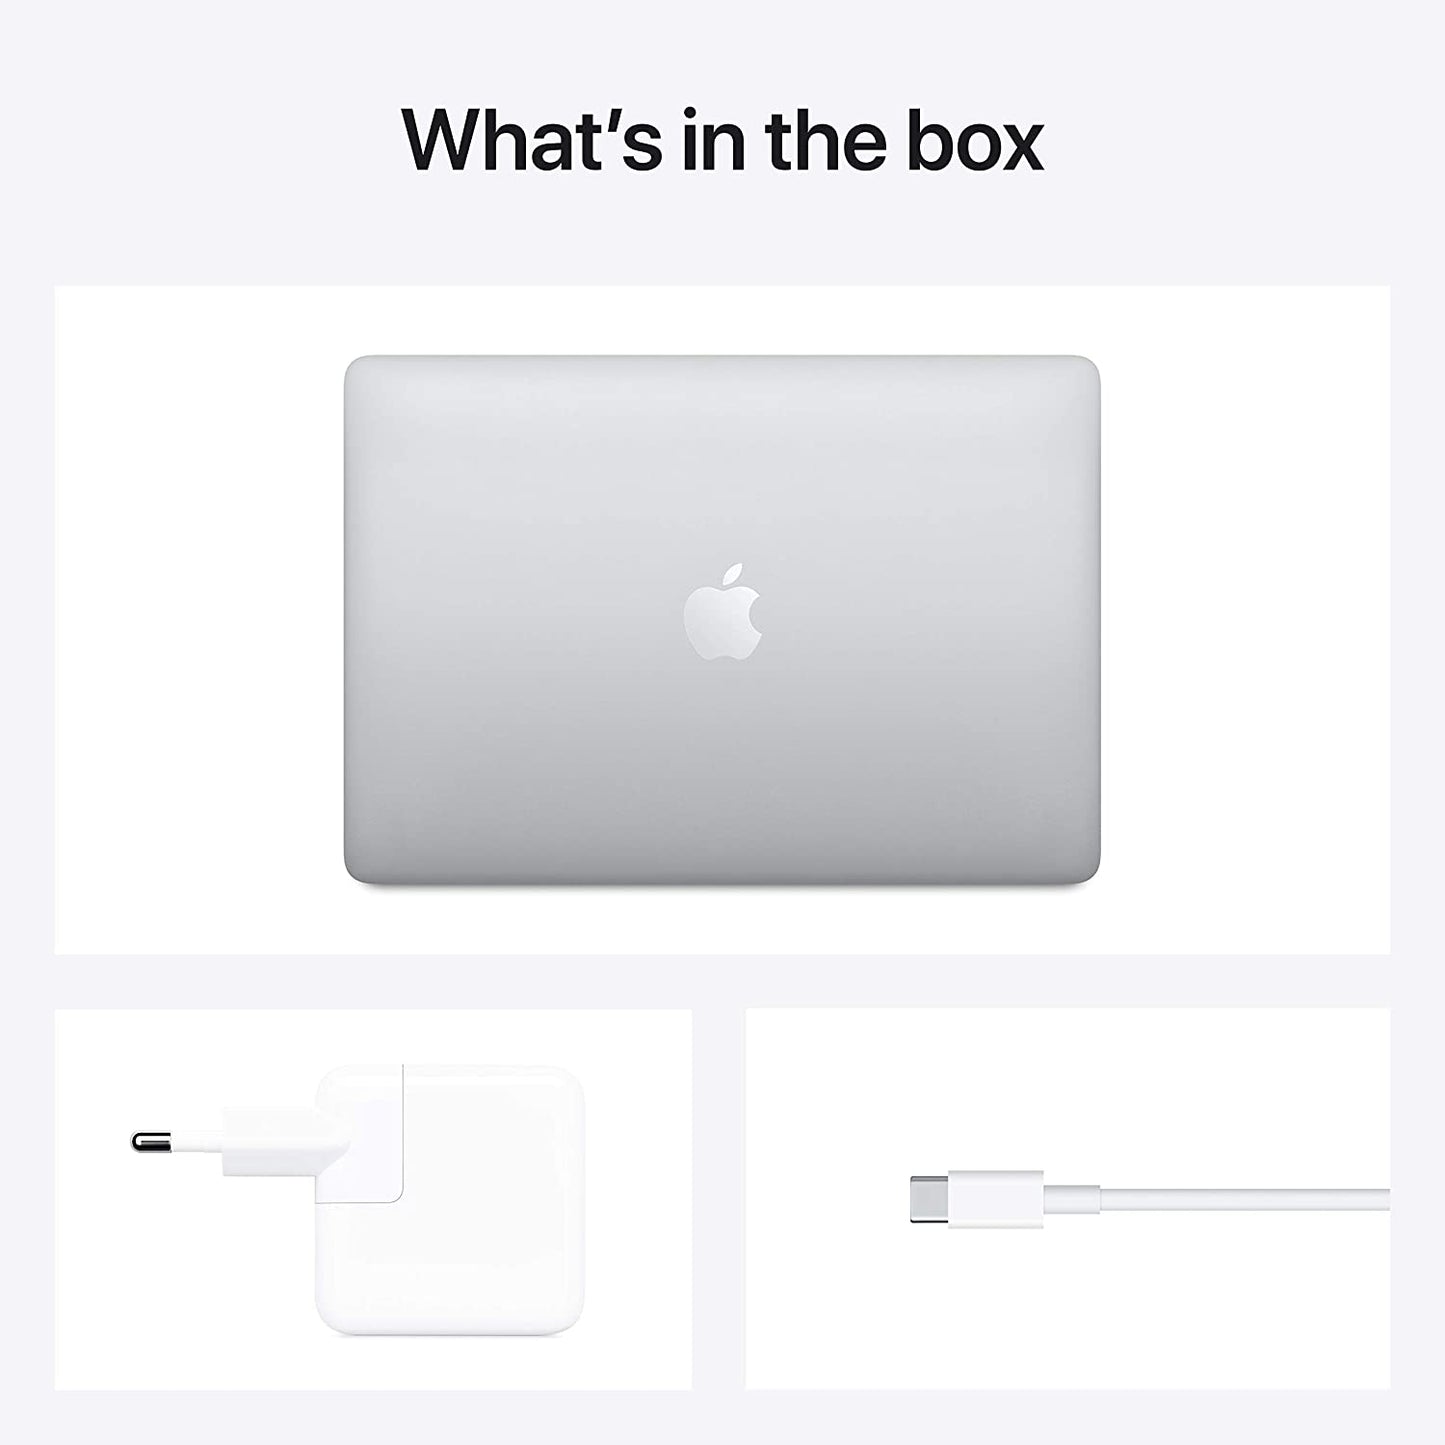 2020 MacBook Pro Silver